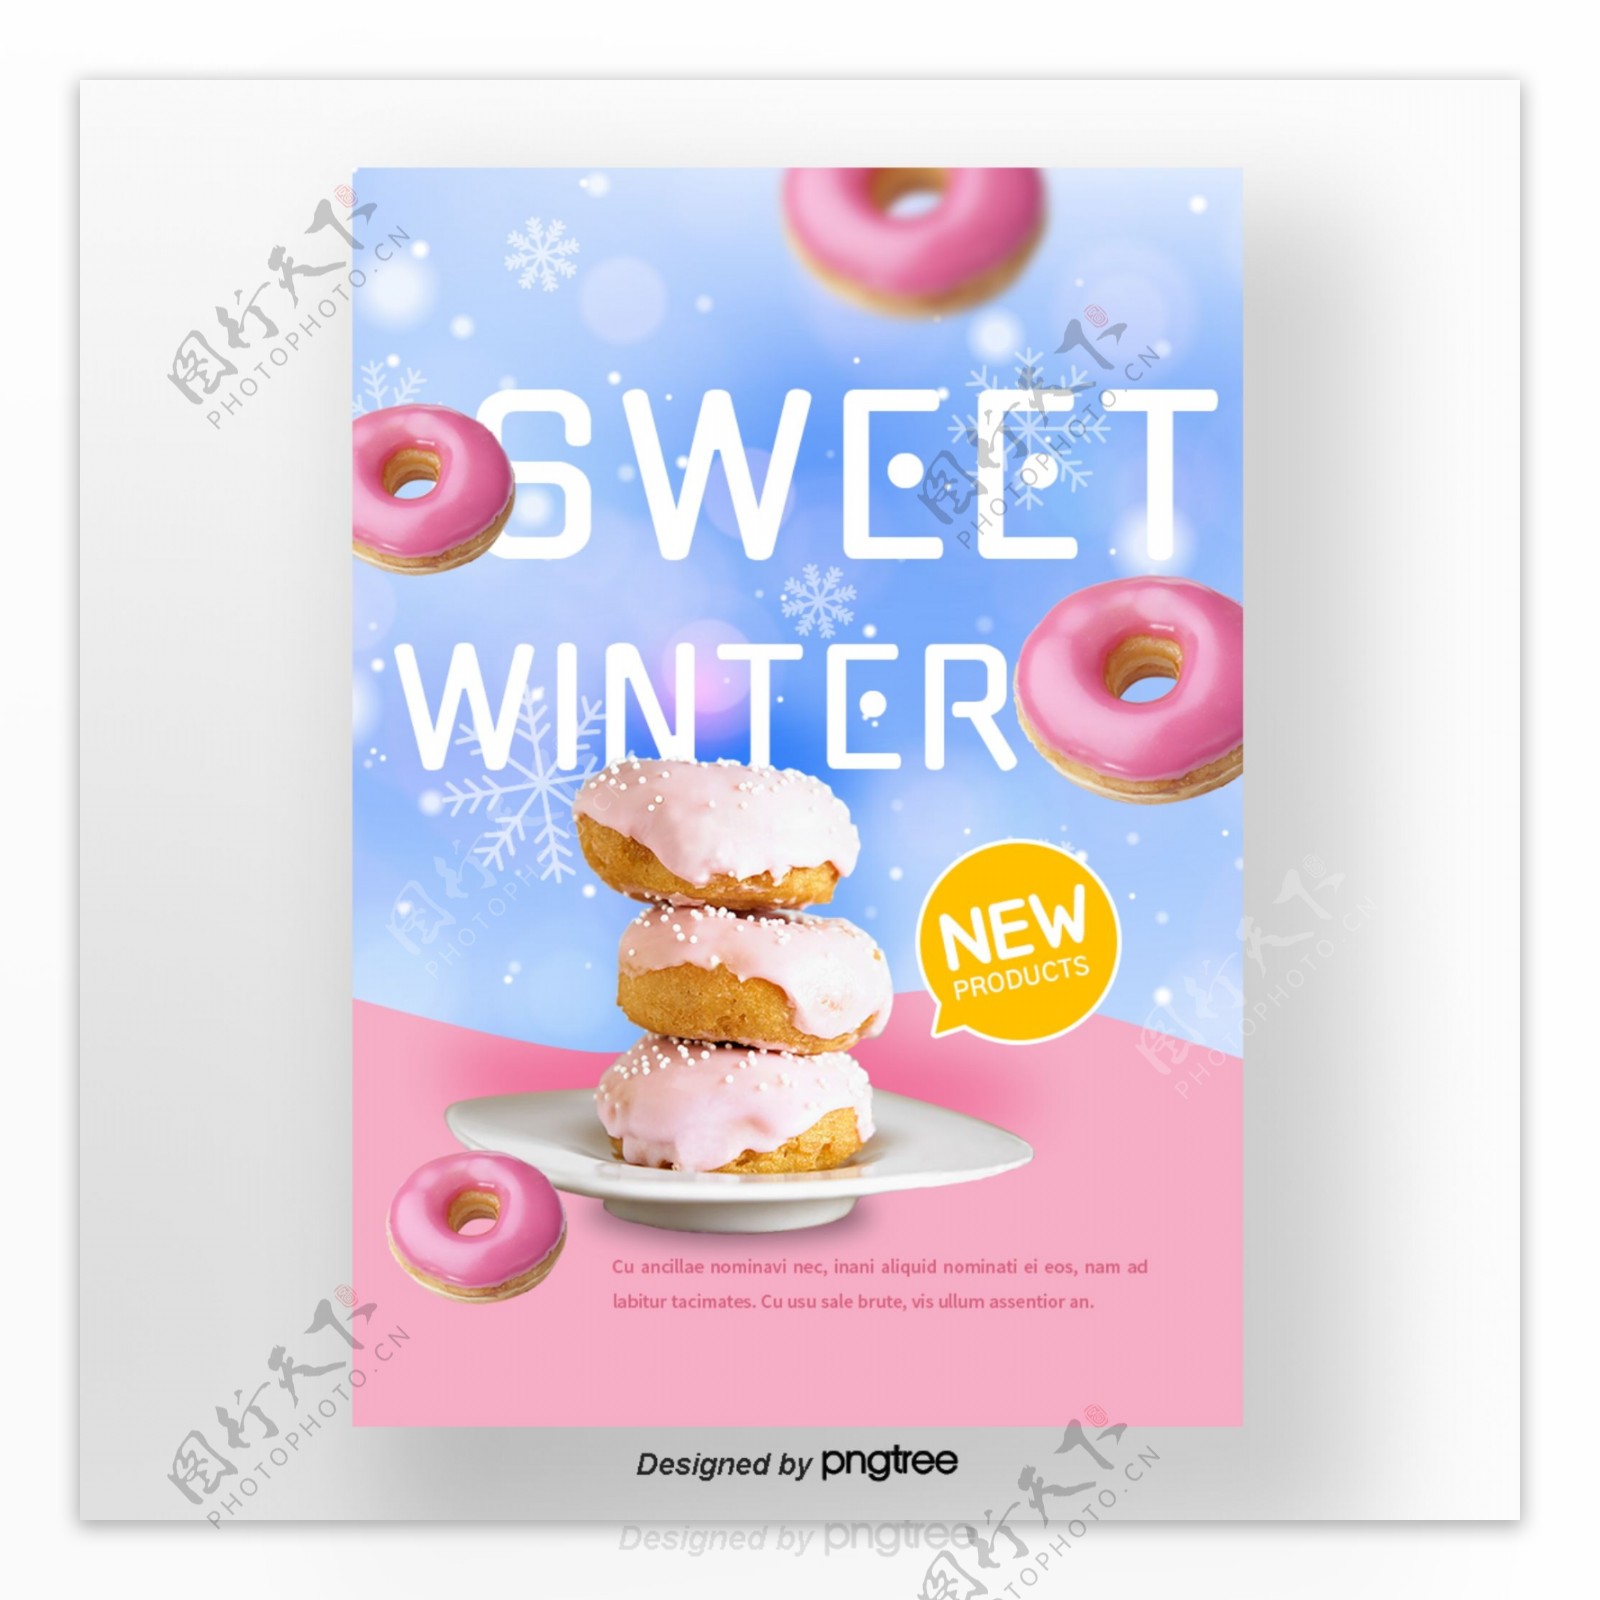 粉红色宽蓝色逐渐变更背景雪花冬天甜味食品海报